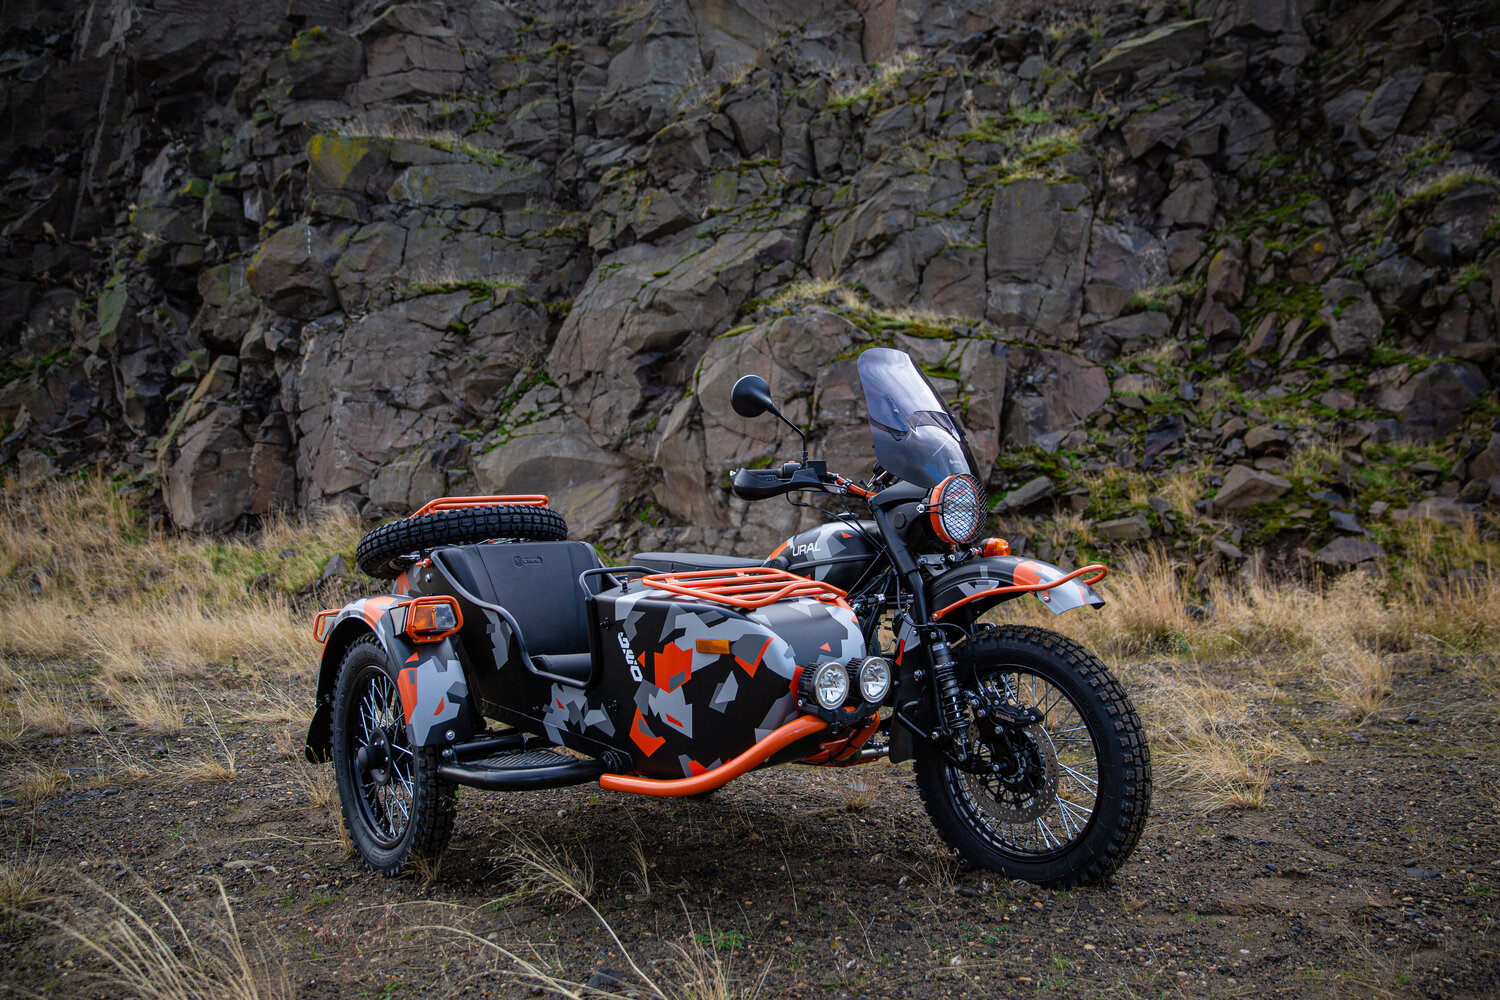 Фото: официальный сайт Ural Motorcycles